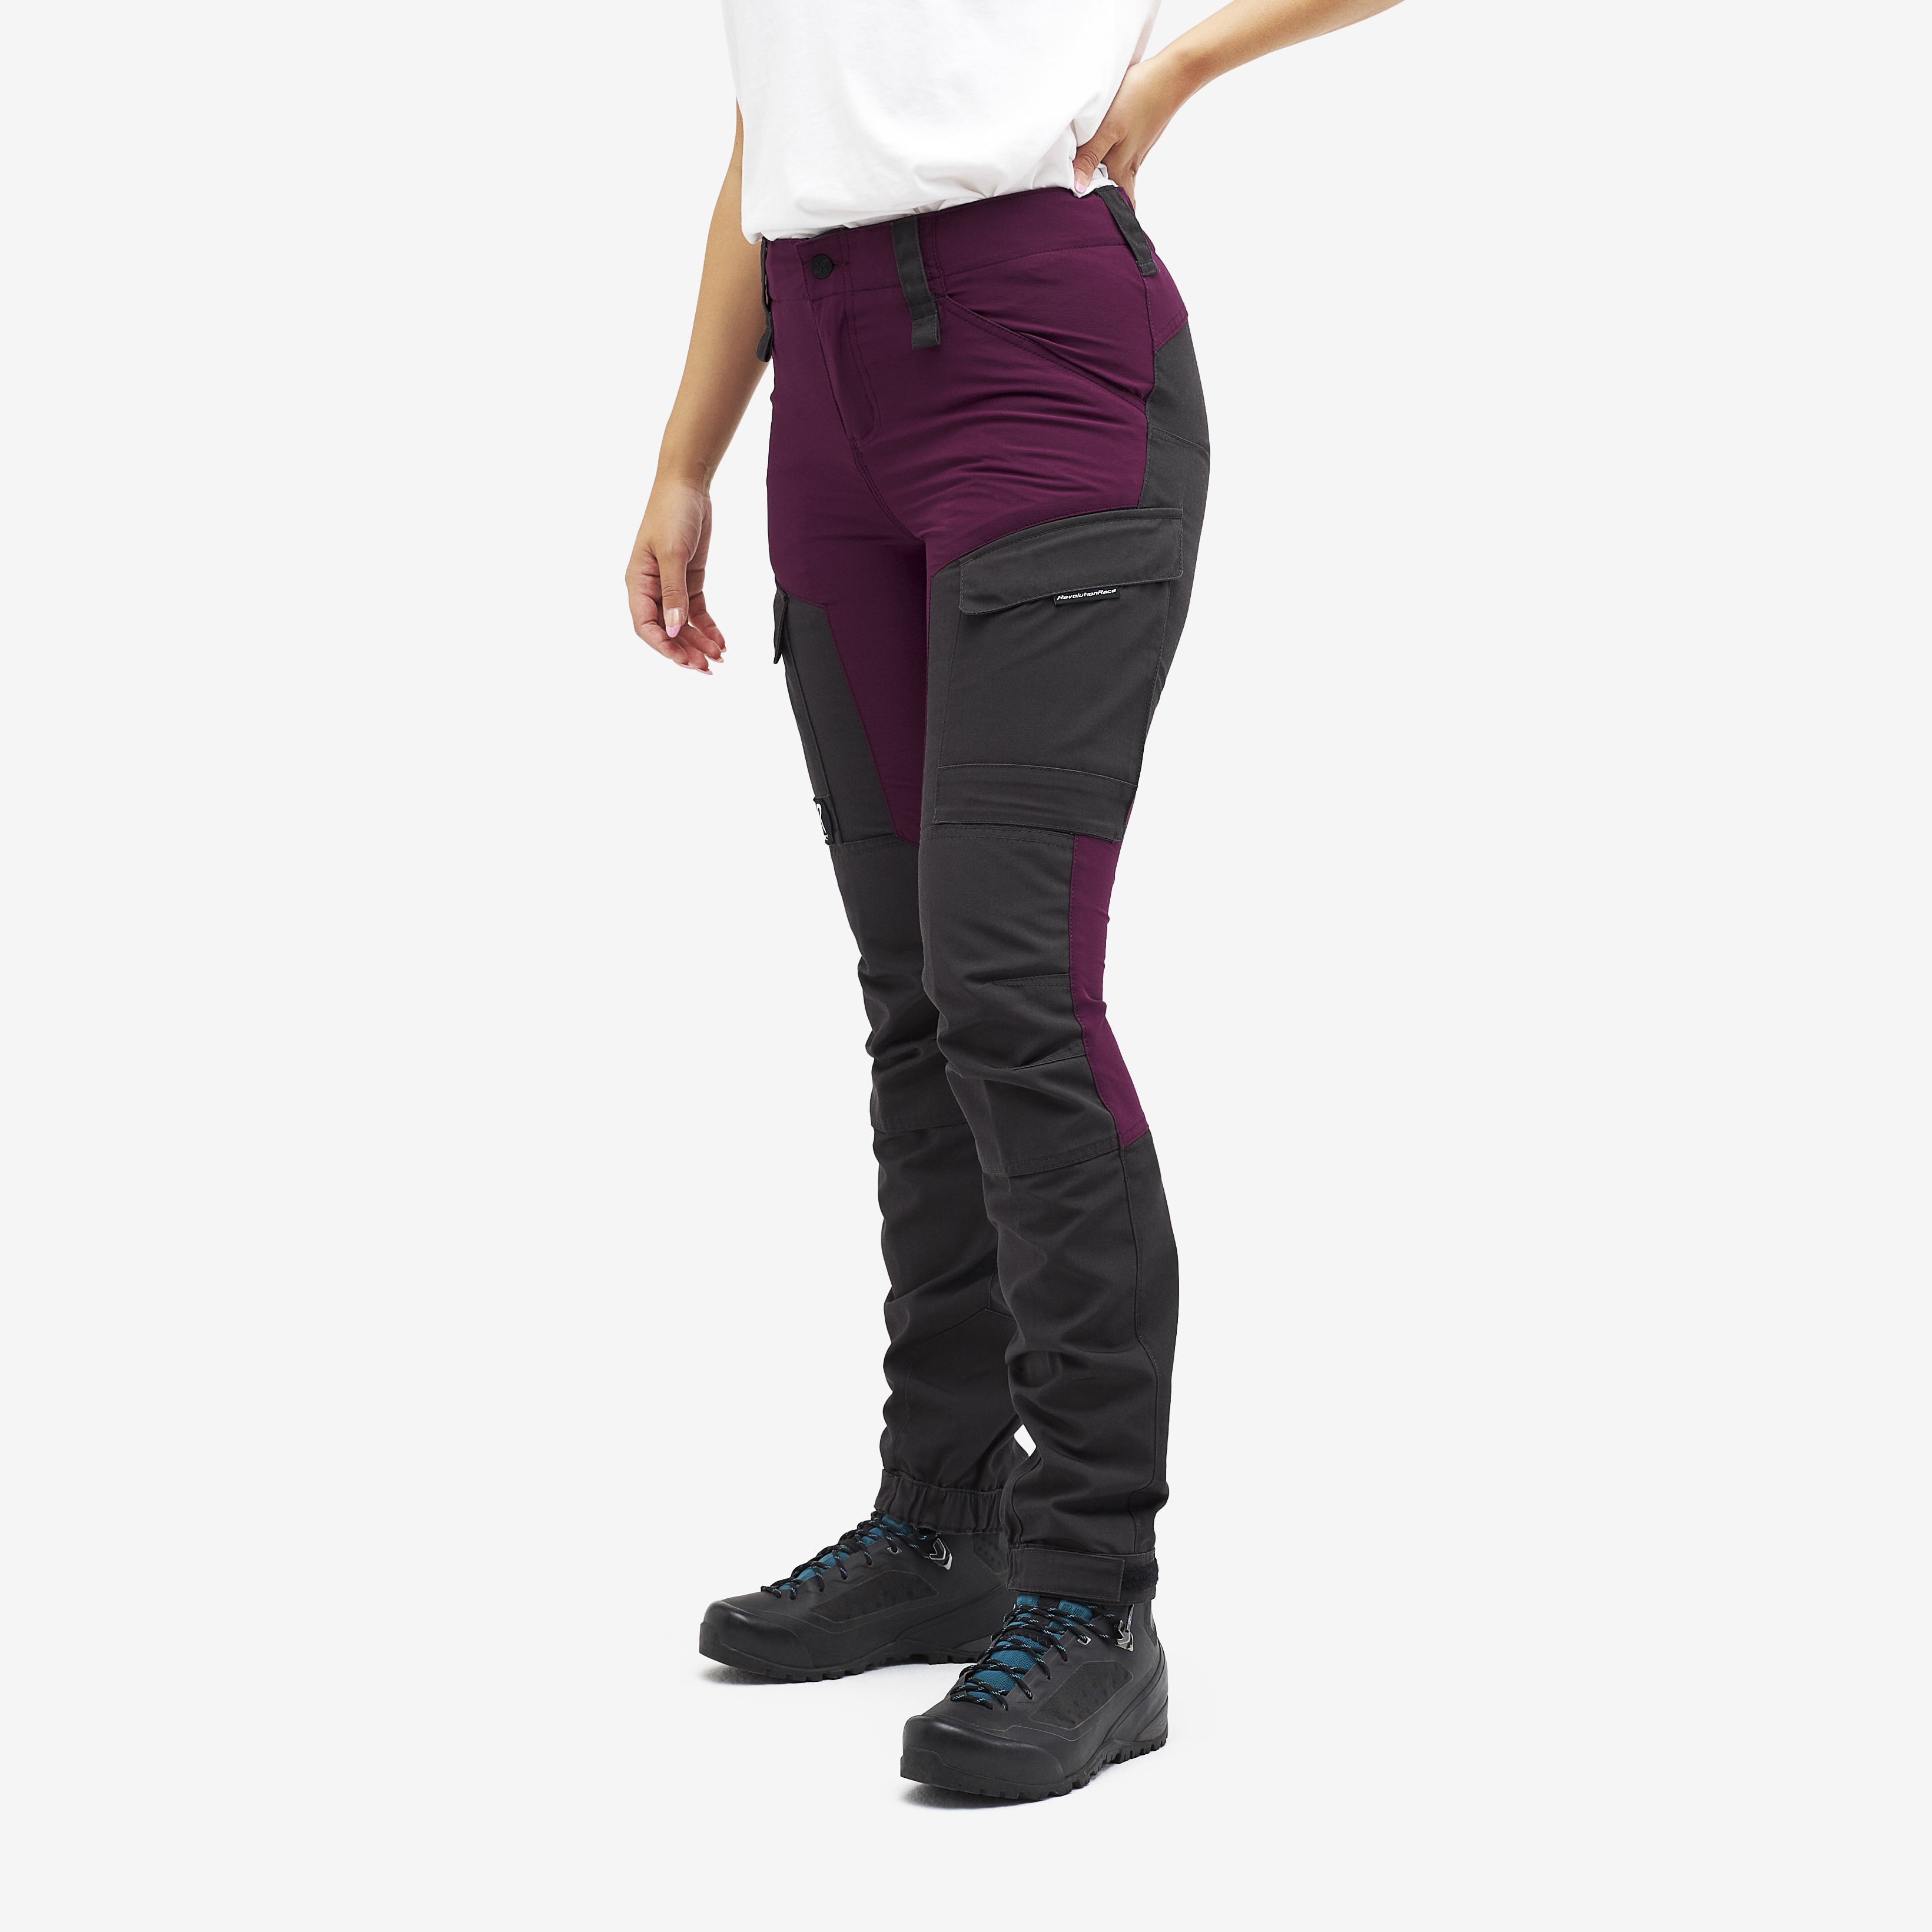 RVRC GP walking trousers for women in purple